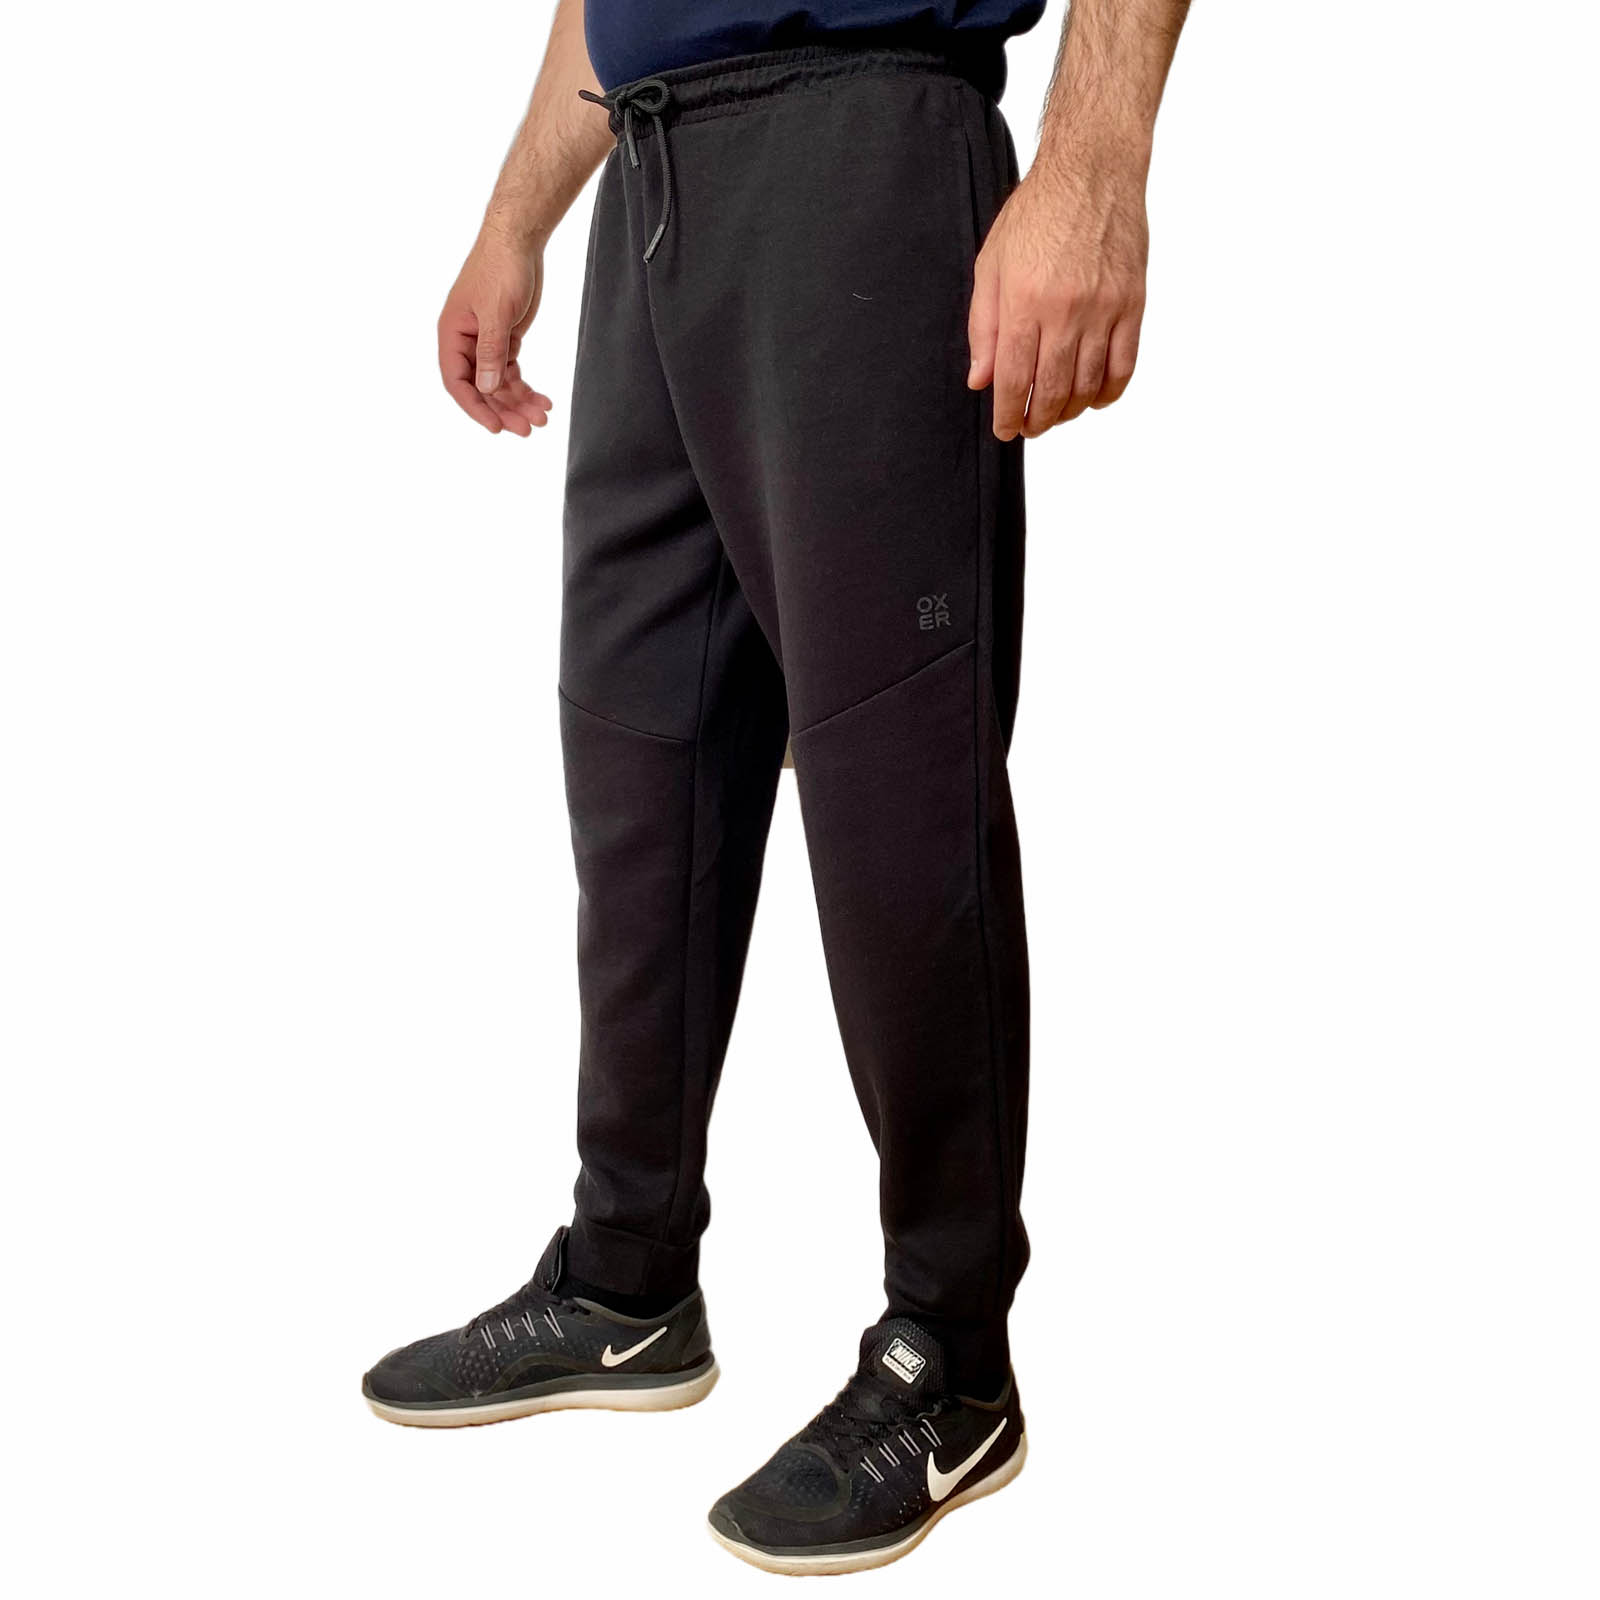 Купить недорого трикотажные мужские штаны